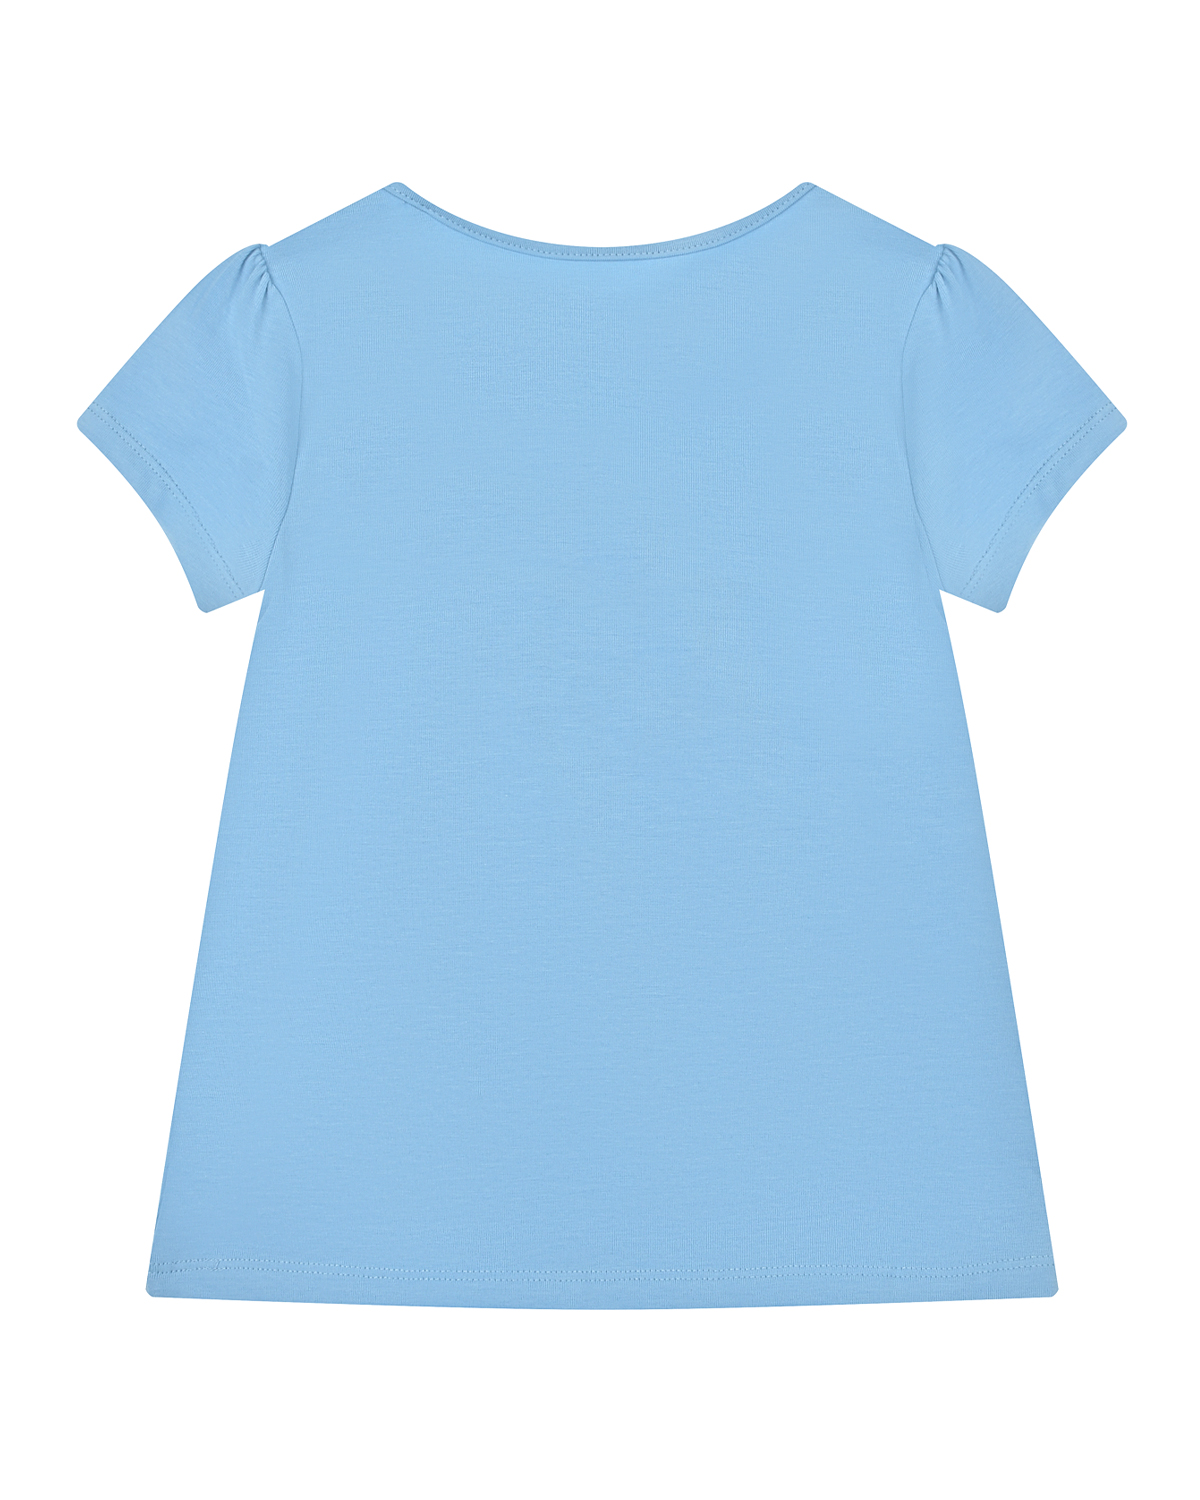 Голубая футболка с принтом "мишка" Guess детская, размер 92, цвет голубой - фото 2